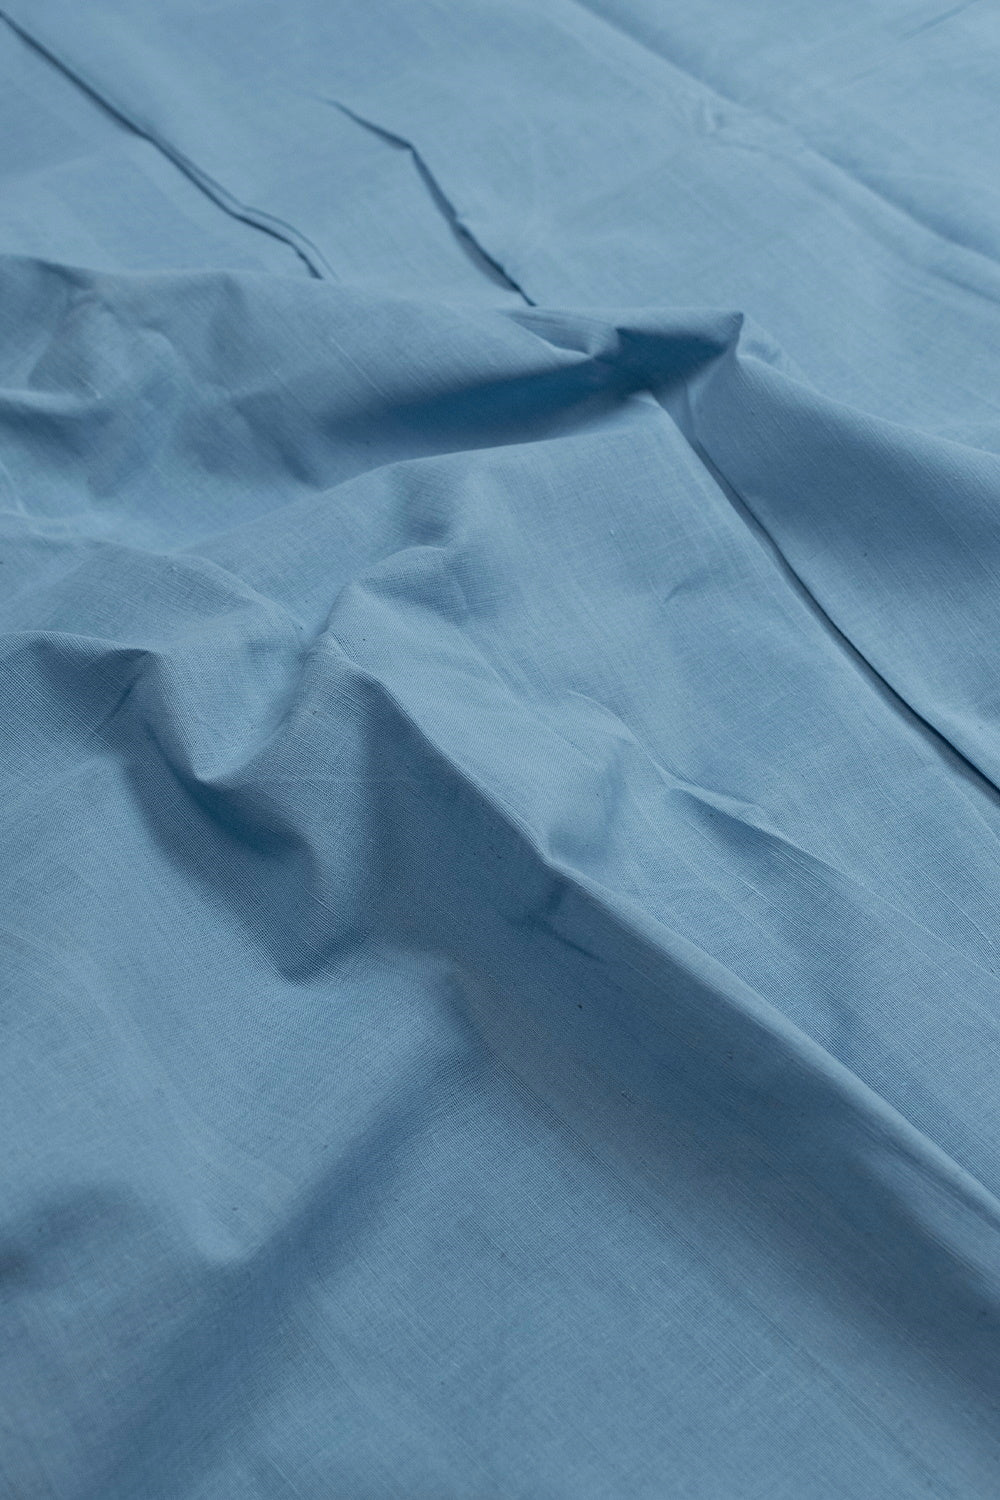 Corn Flower Blue Handspun Handwoven Cotton Fabric - 1.4m